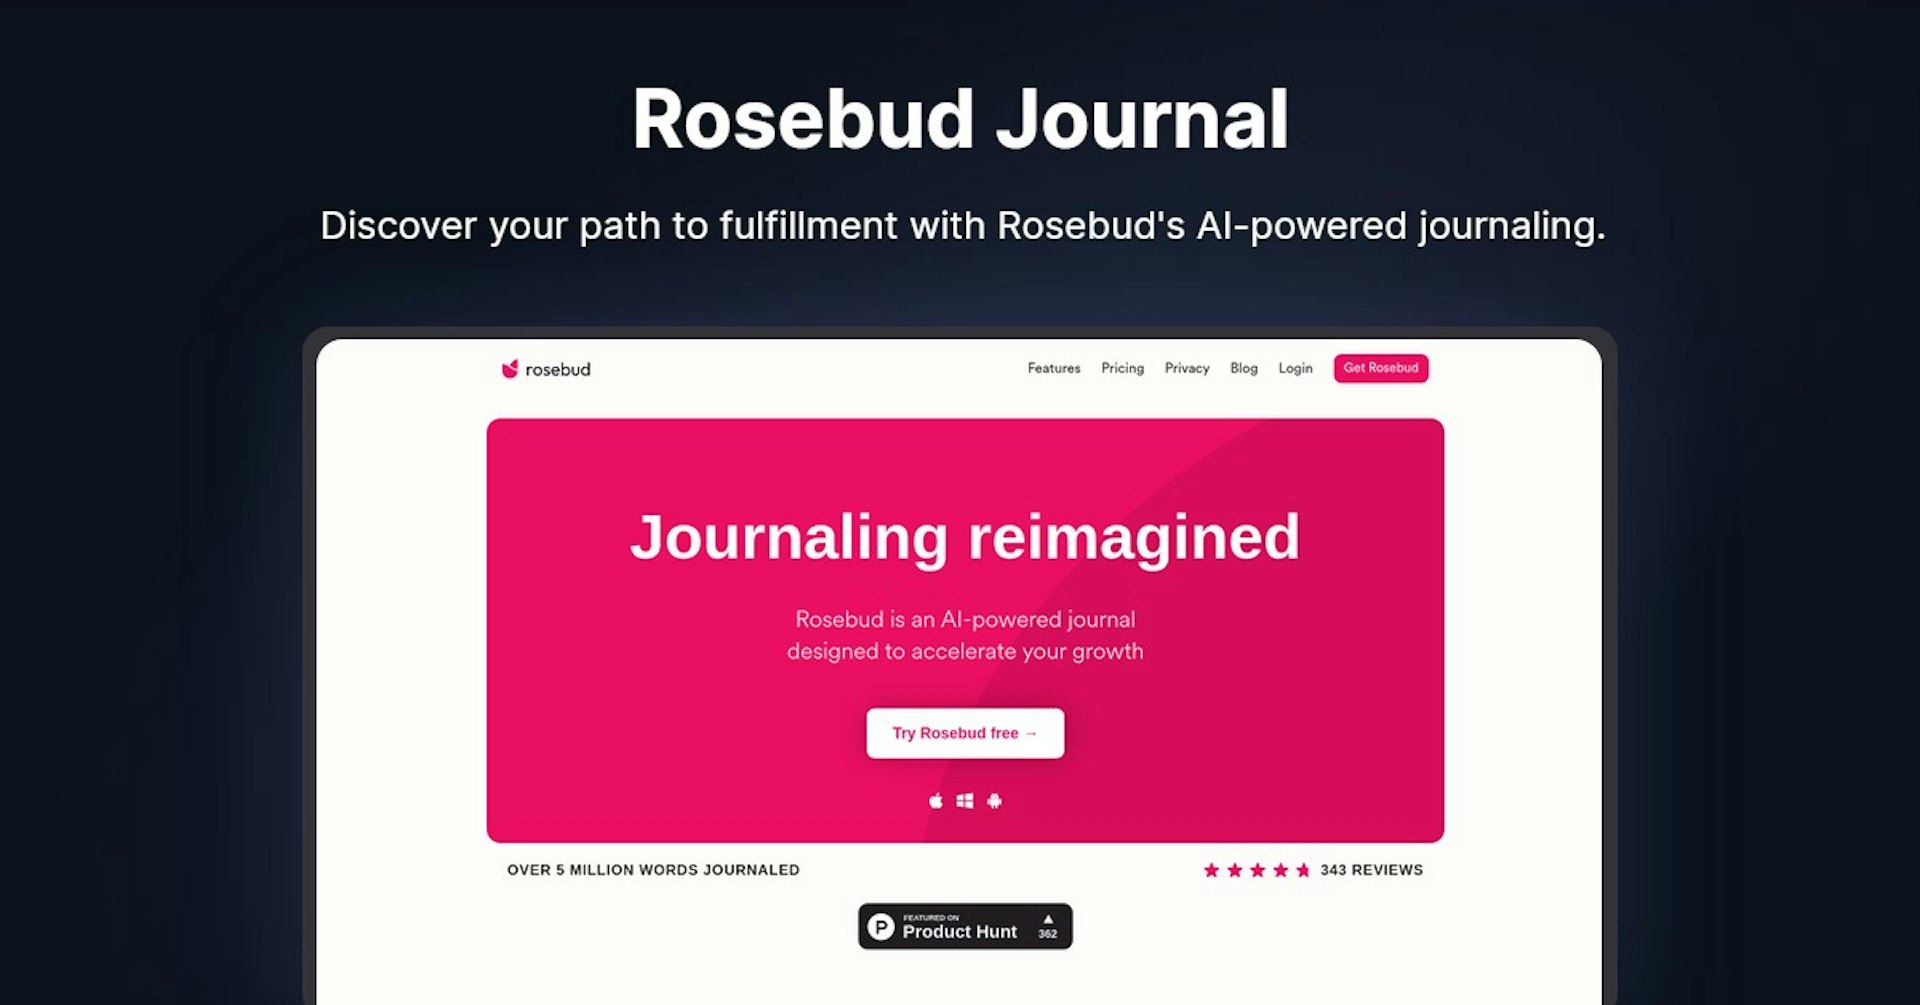 Rosebud Journal